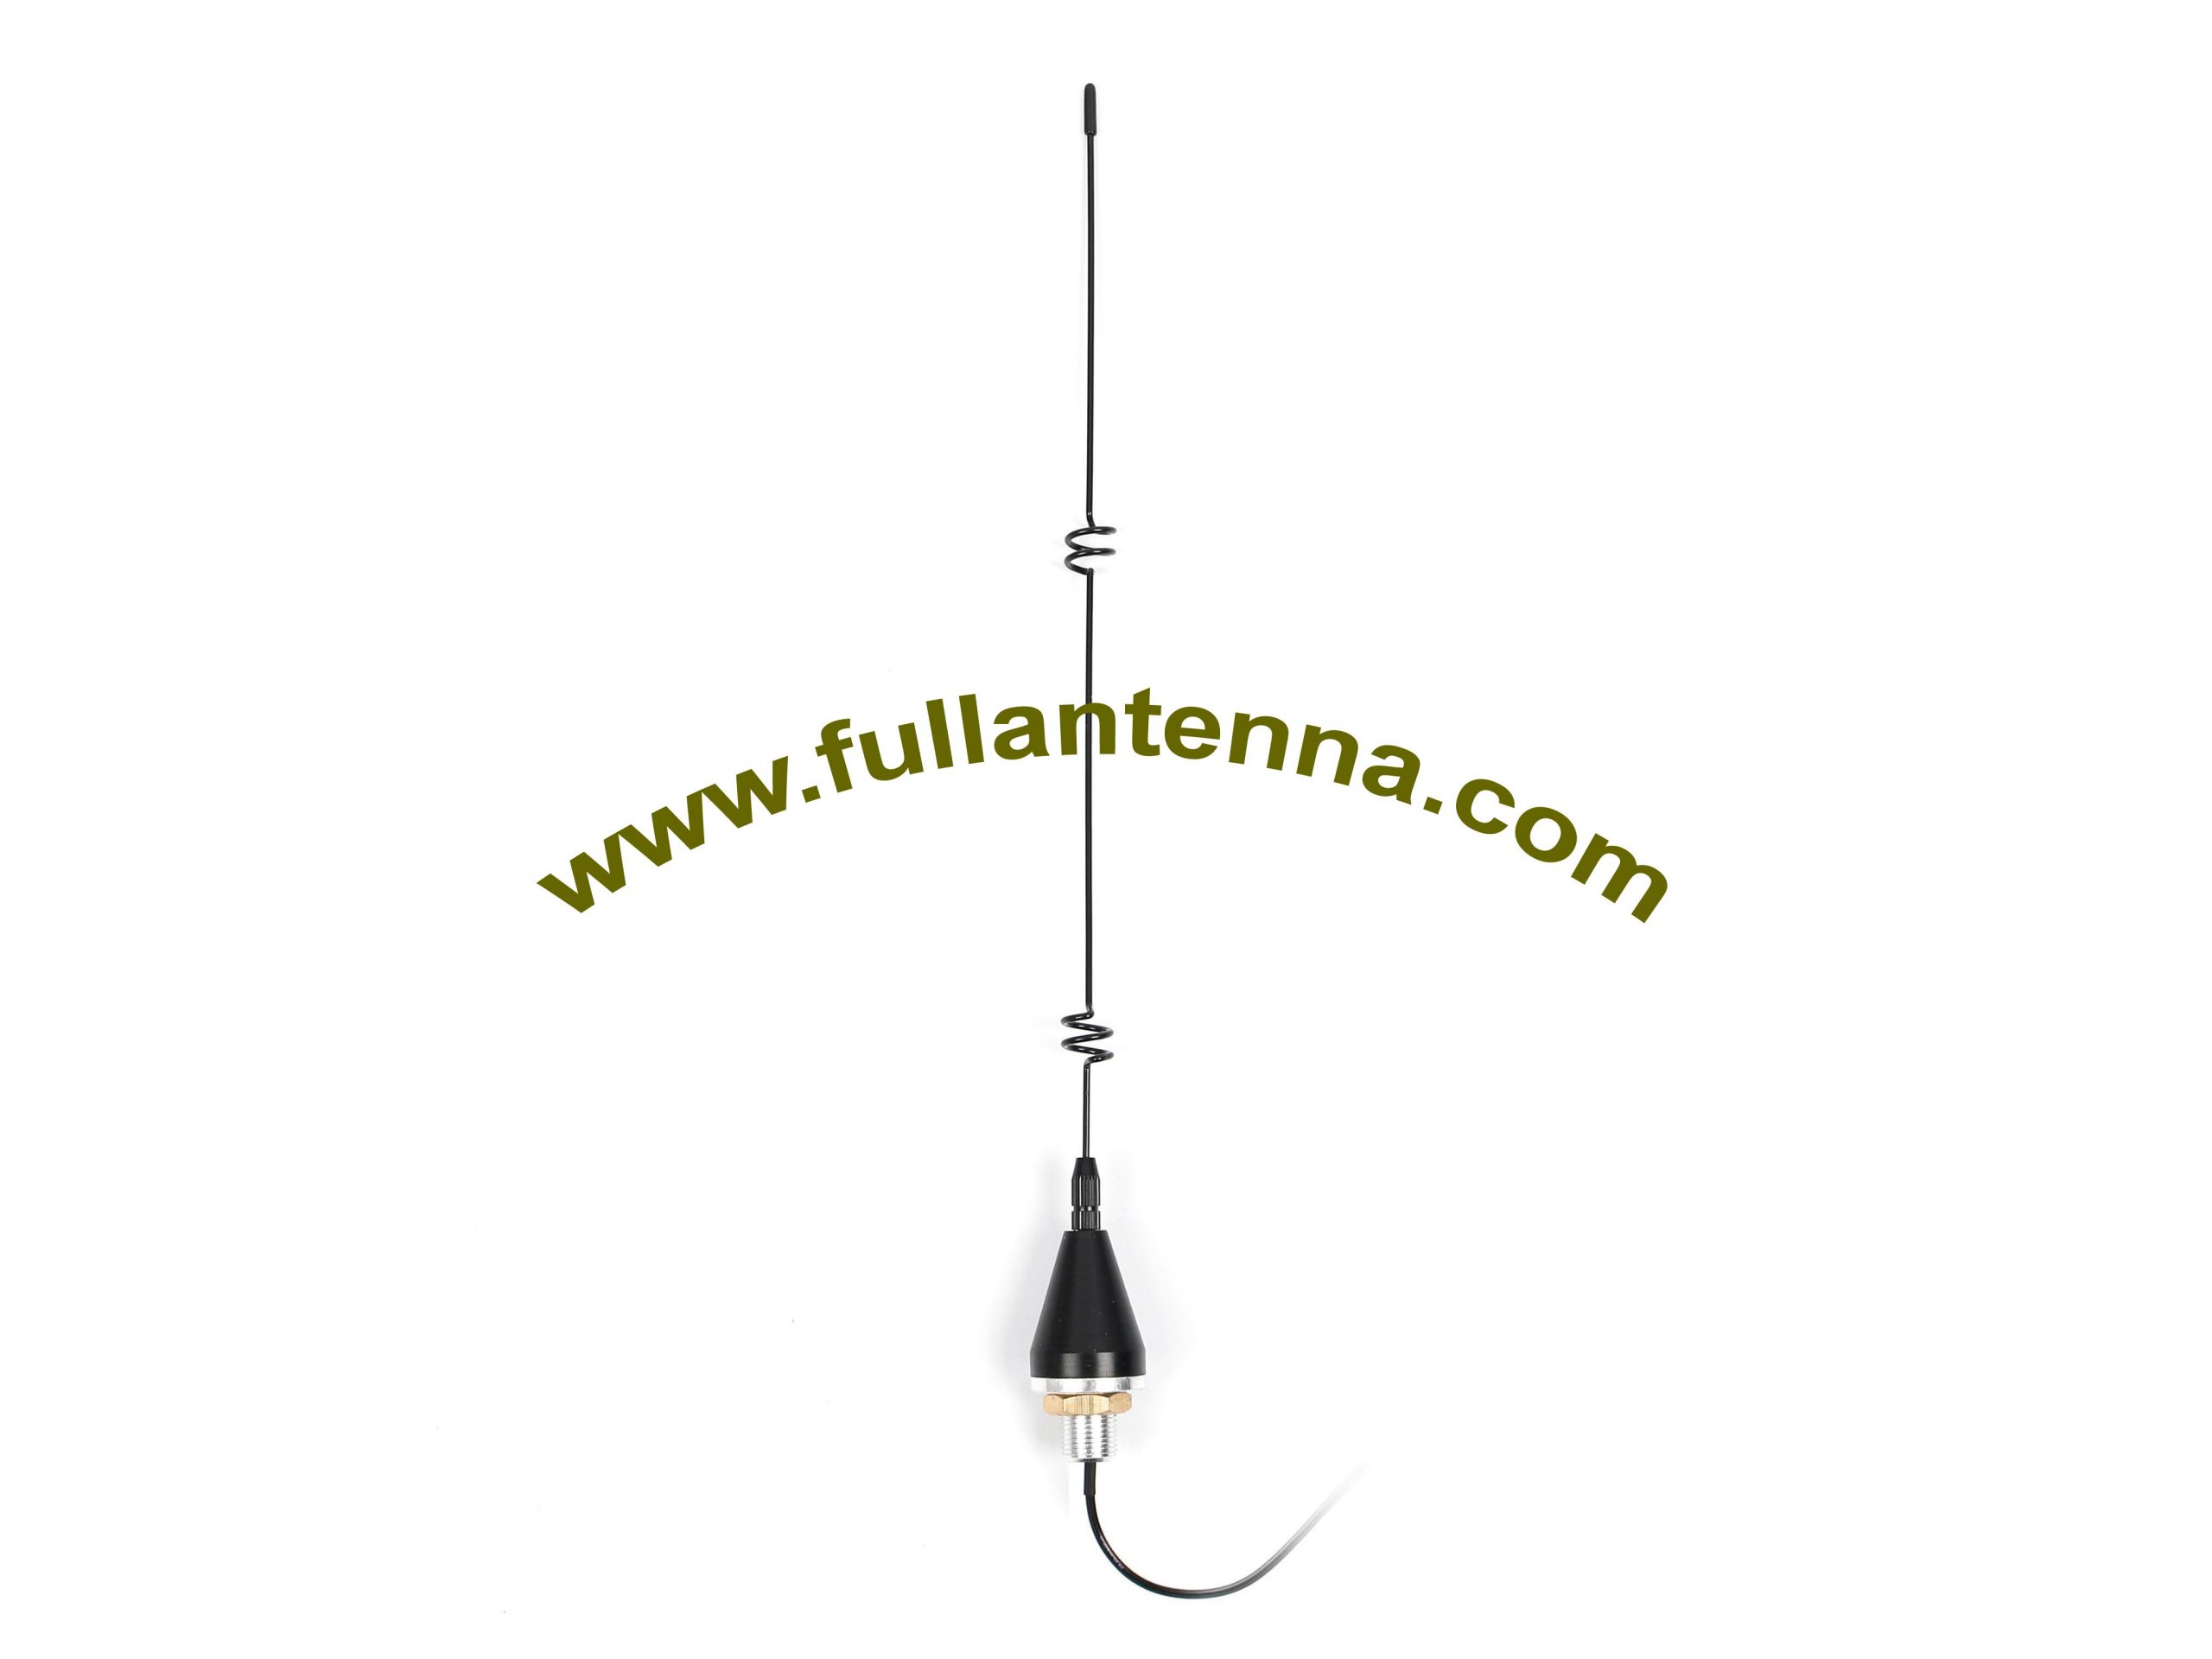 Manufactur standard 3g 4g Outdoor Antenna - P/N:FA3G.0603,3G External Antenna,3G METAL whip outdoor screw  antenna – Fullantenna